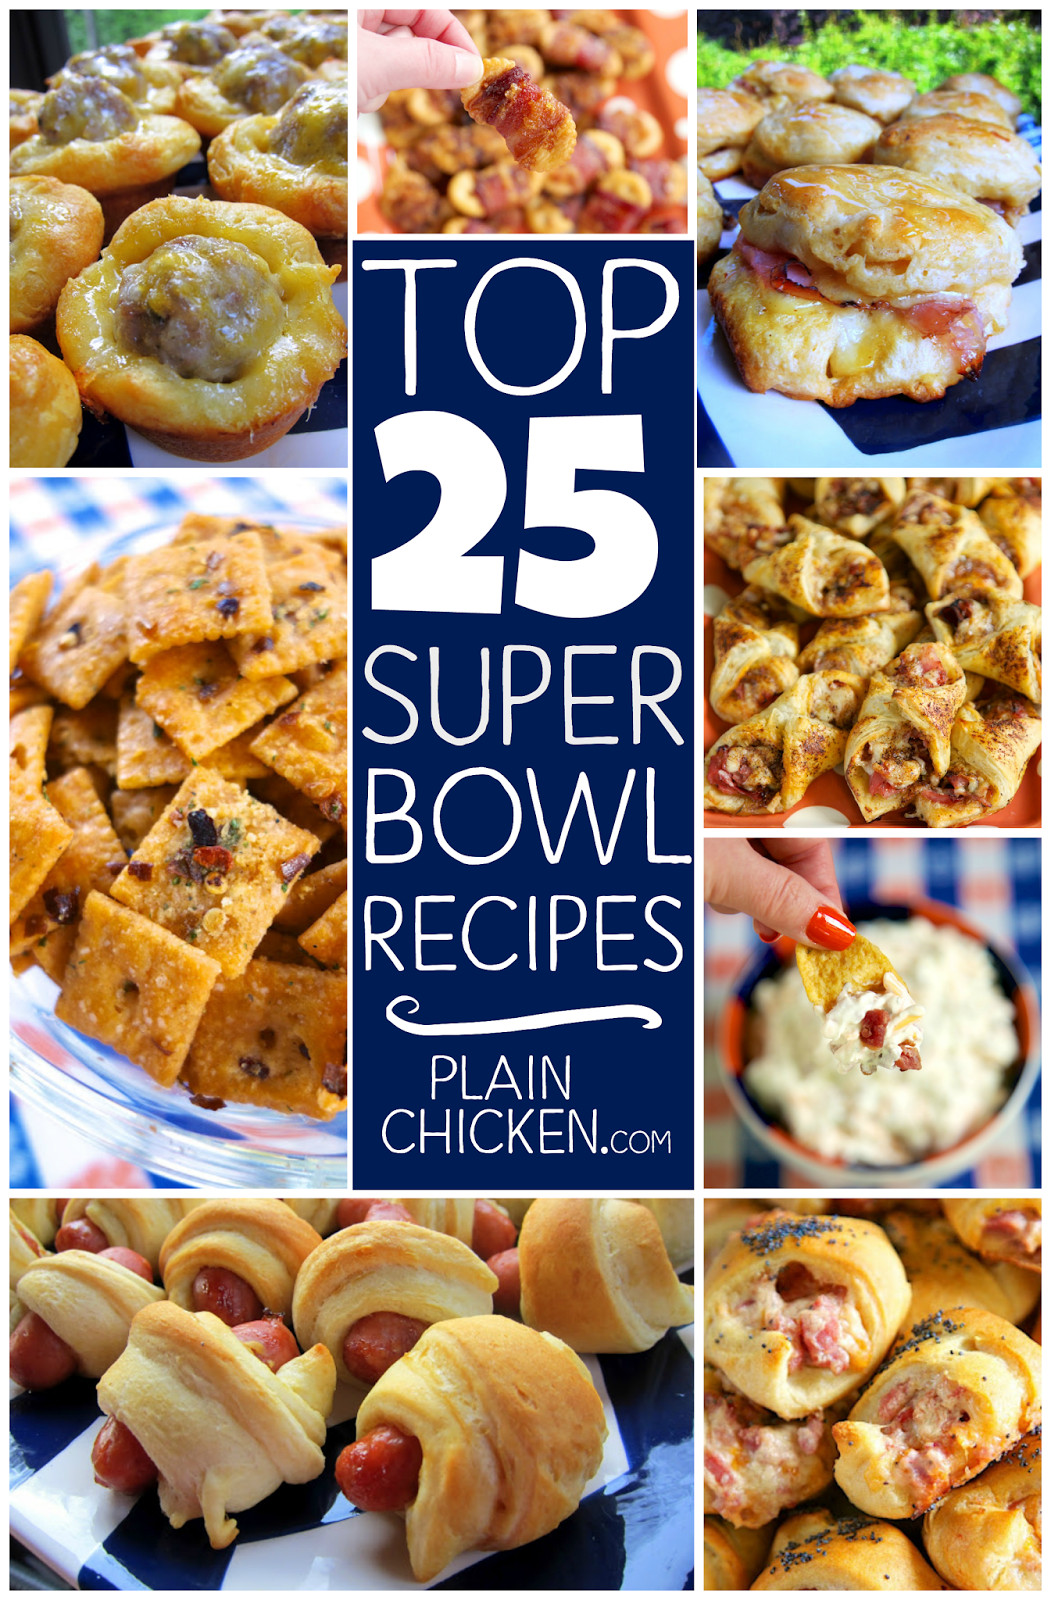 Best Super Bowl Food Recipes
 Top 25 Super Bowl Recipes